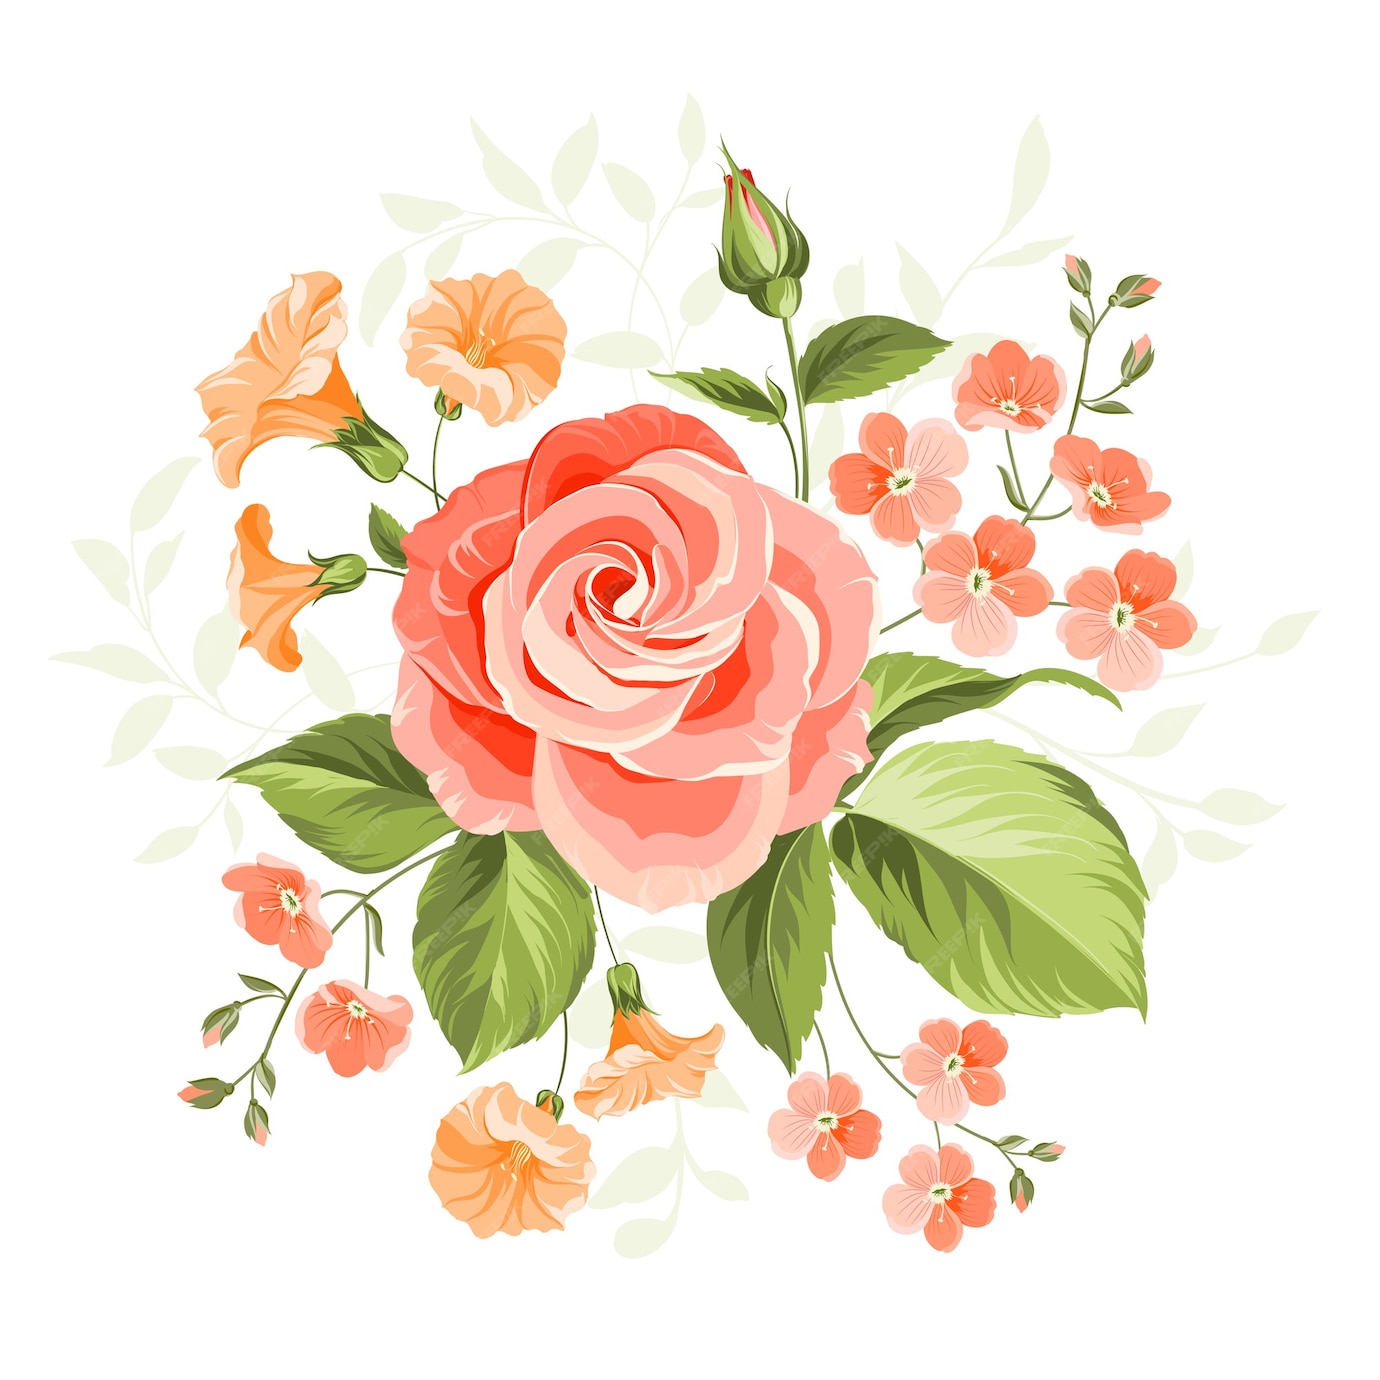 free rose illustration download